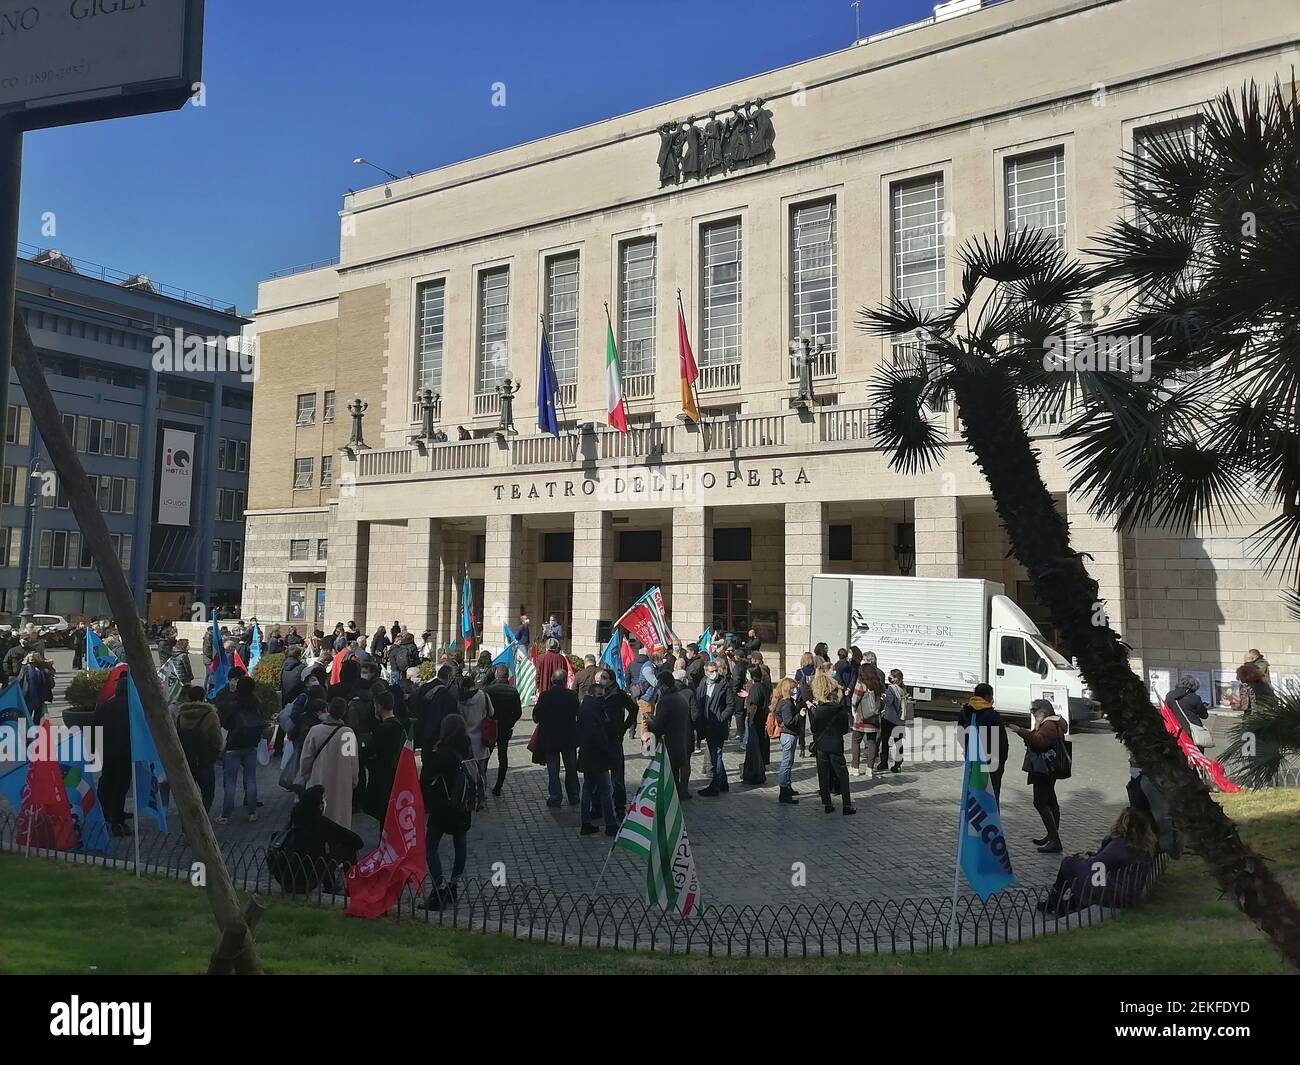 Roma, Italia - 23 febbraio 2021: Covid, protesta al Teatro dell'Opera Foto de stock